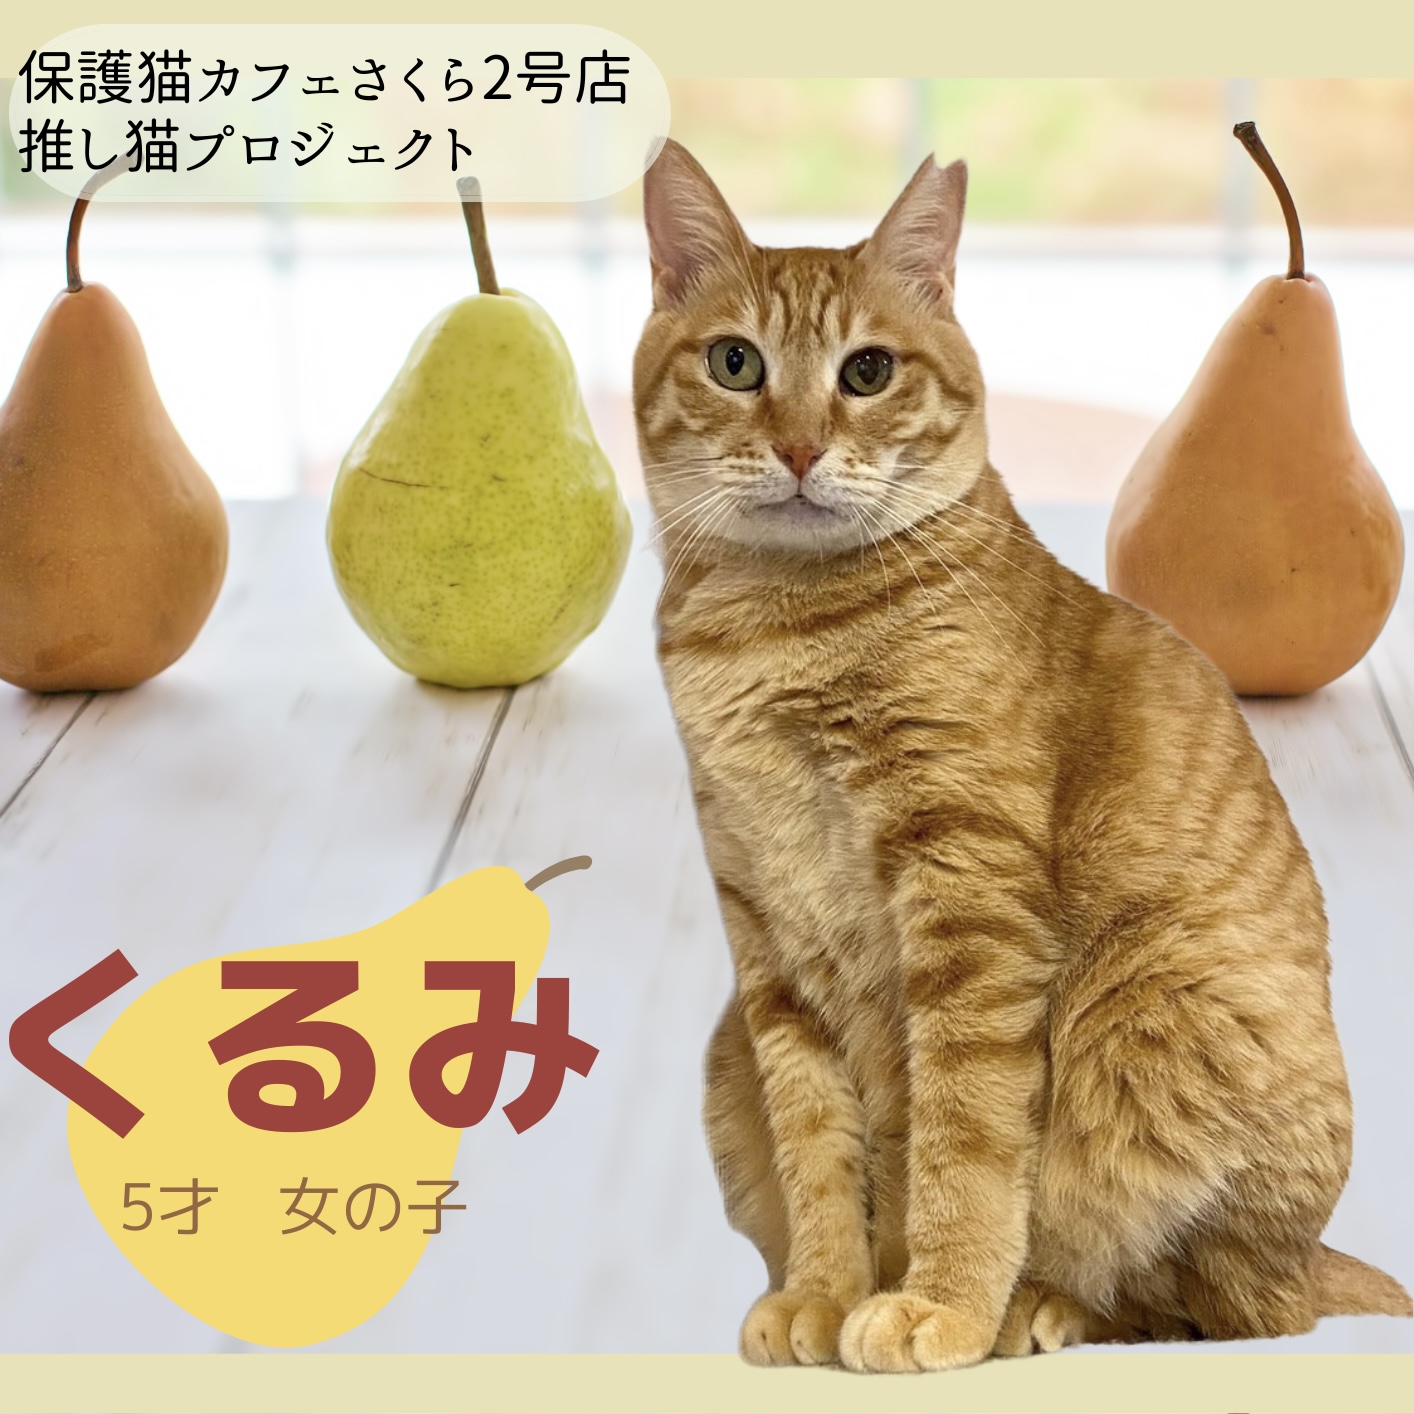 保護猫カフェさくら2号店 - 1